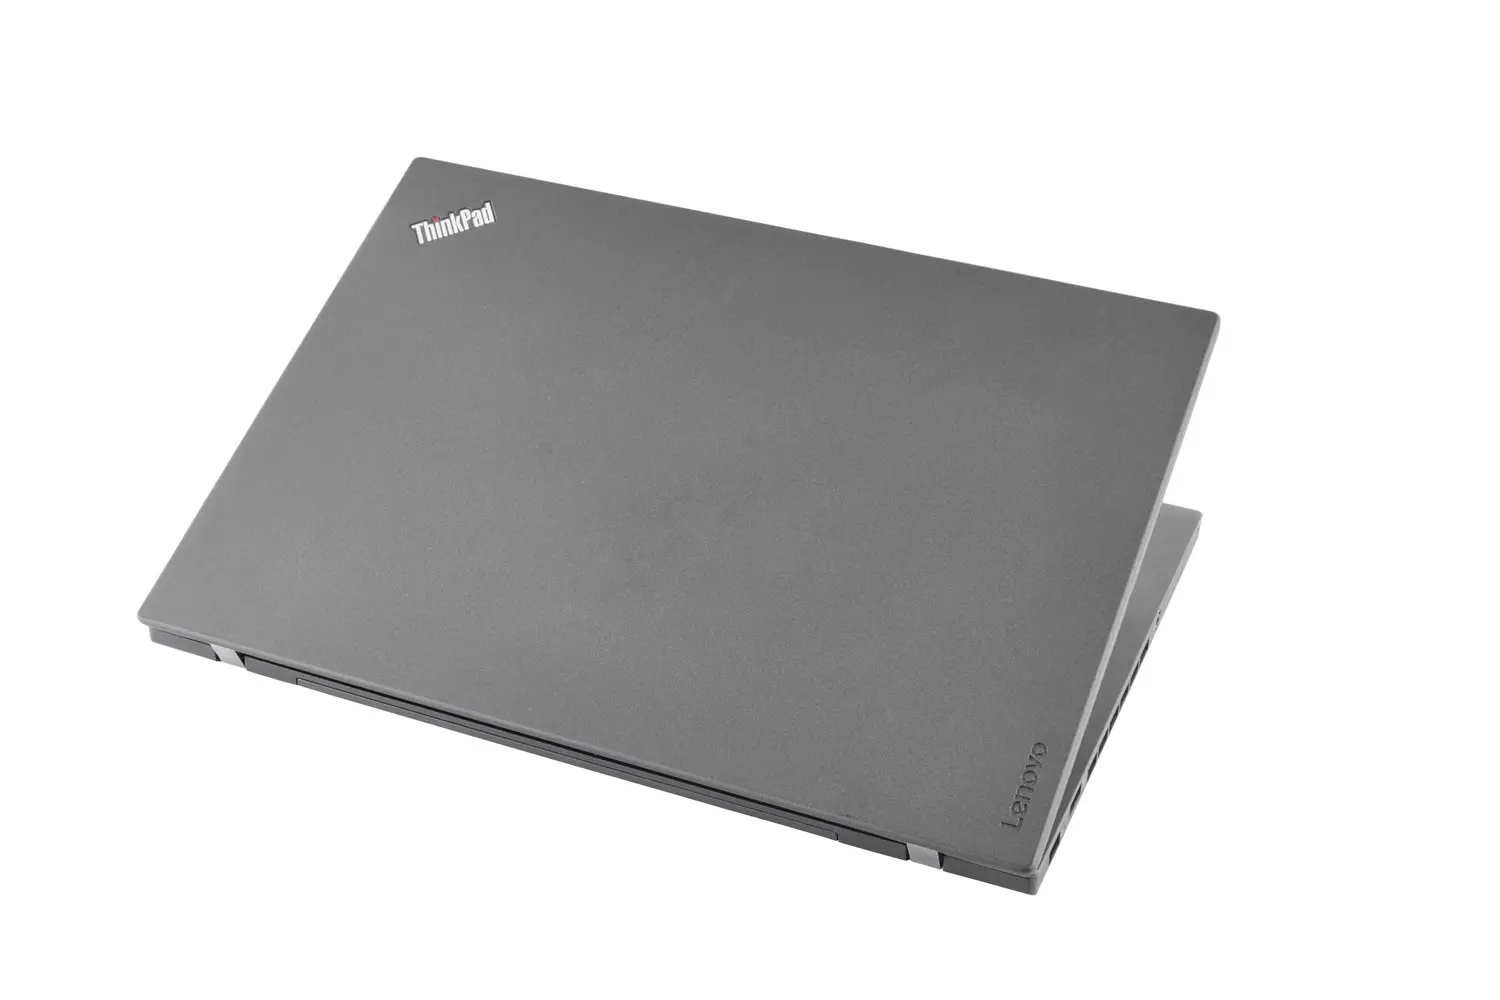 Lenovo ThinkPad T460p, i5, 14 Zoll Full-HD IPS, 8GB, 500GB SSD, nVidia GT 940MX, Webcam, beleuchtete Tastatur, Windows 10 Pro